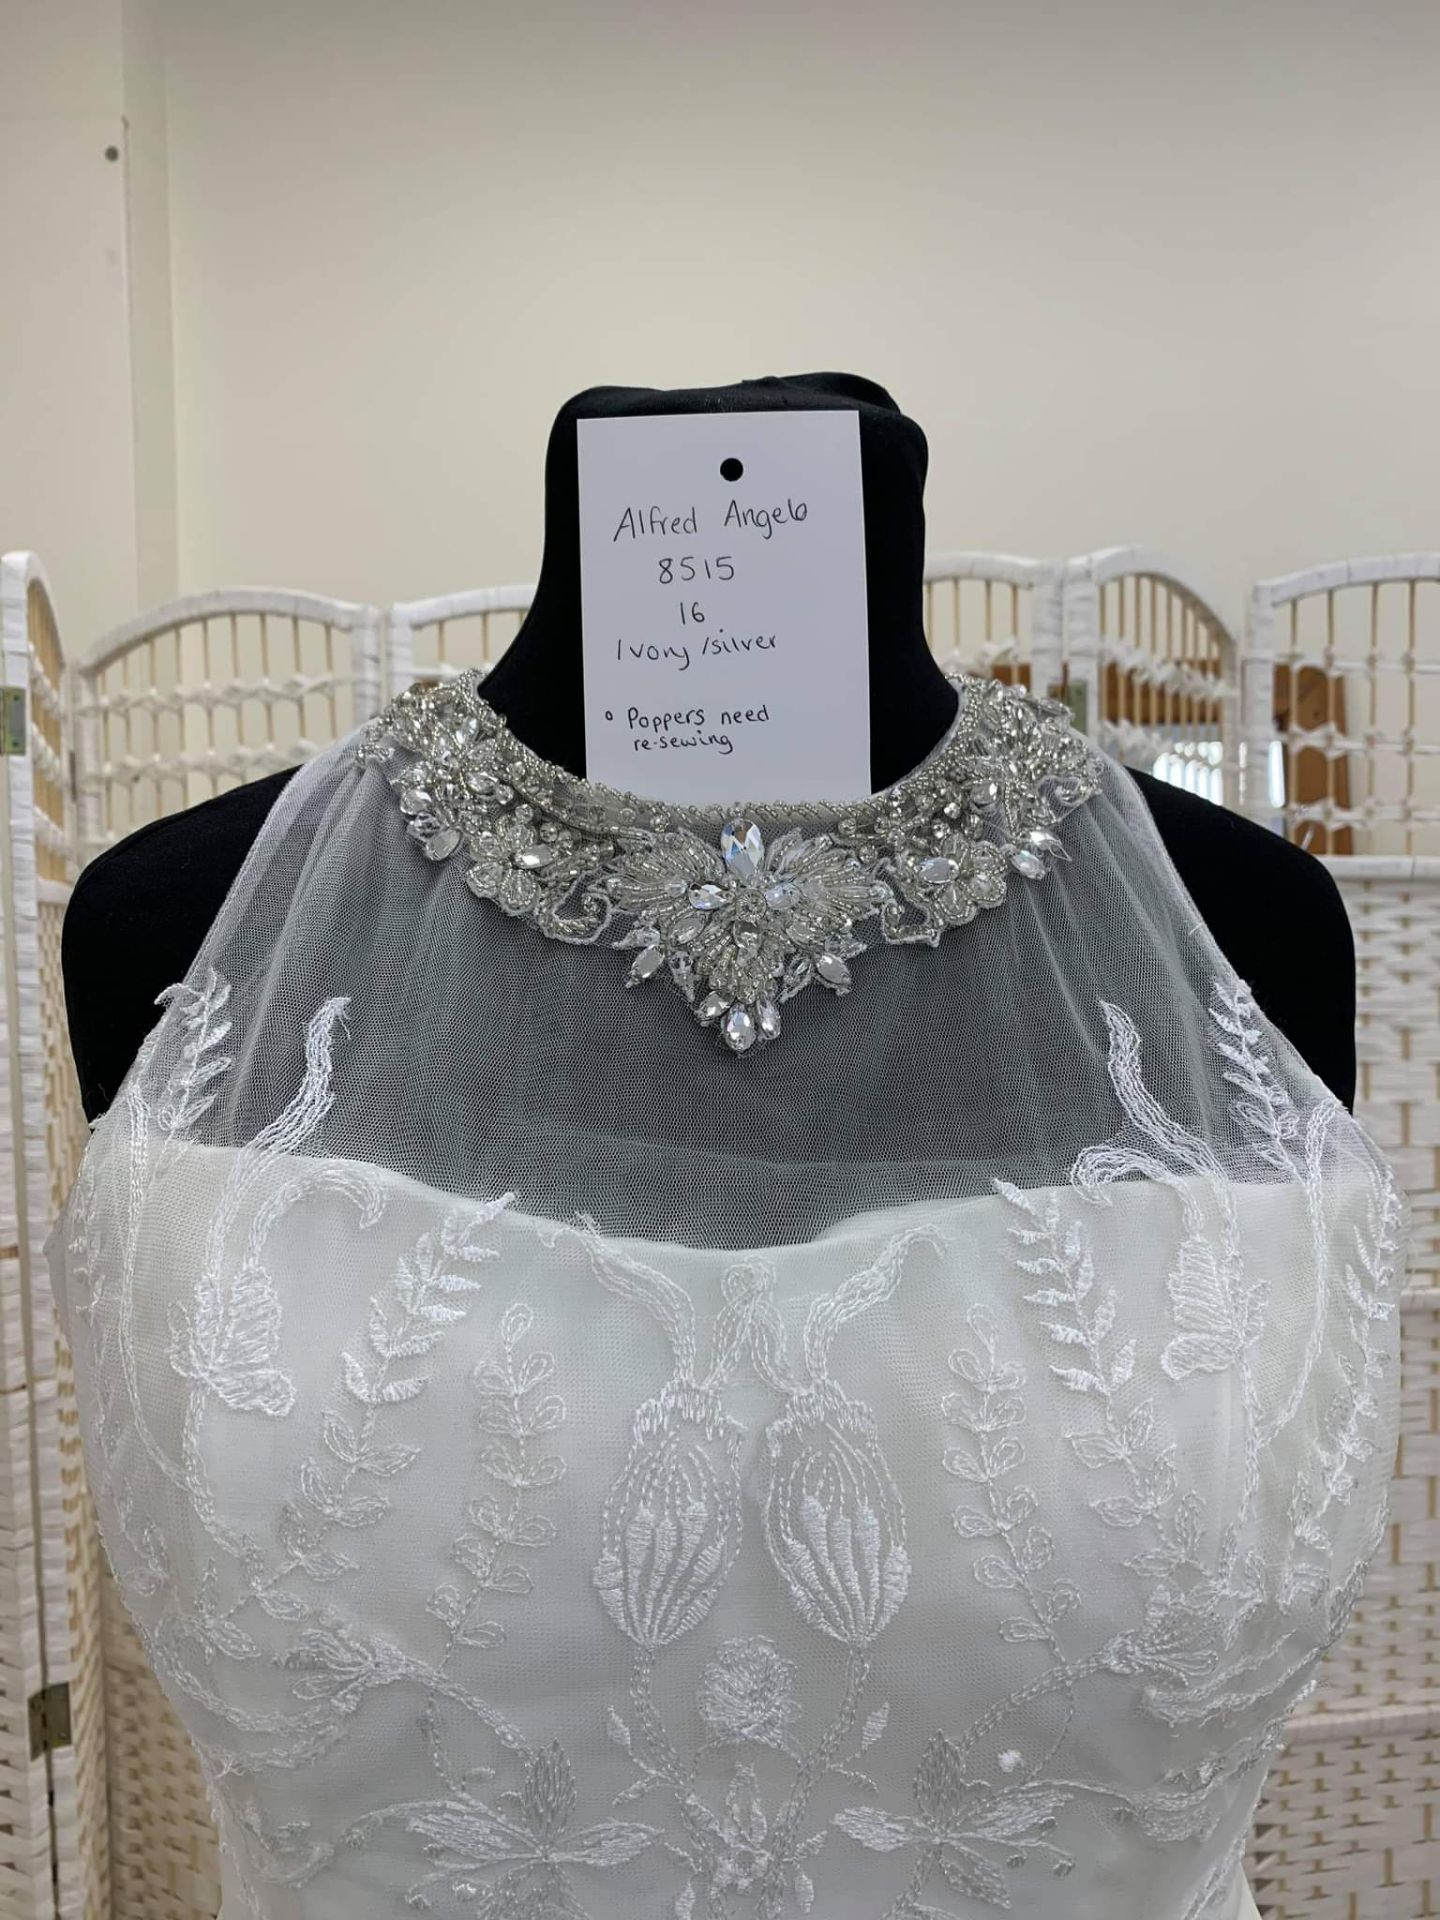 Alfred Angelo Wedding Dress UK 8516 Size 16